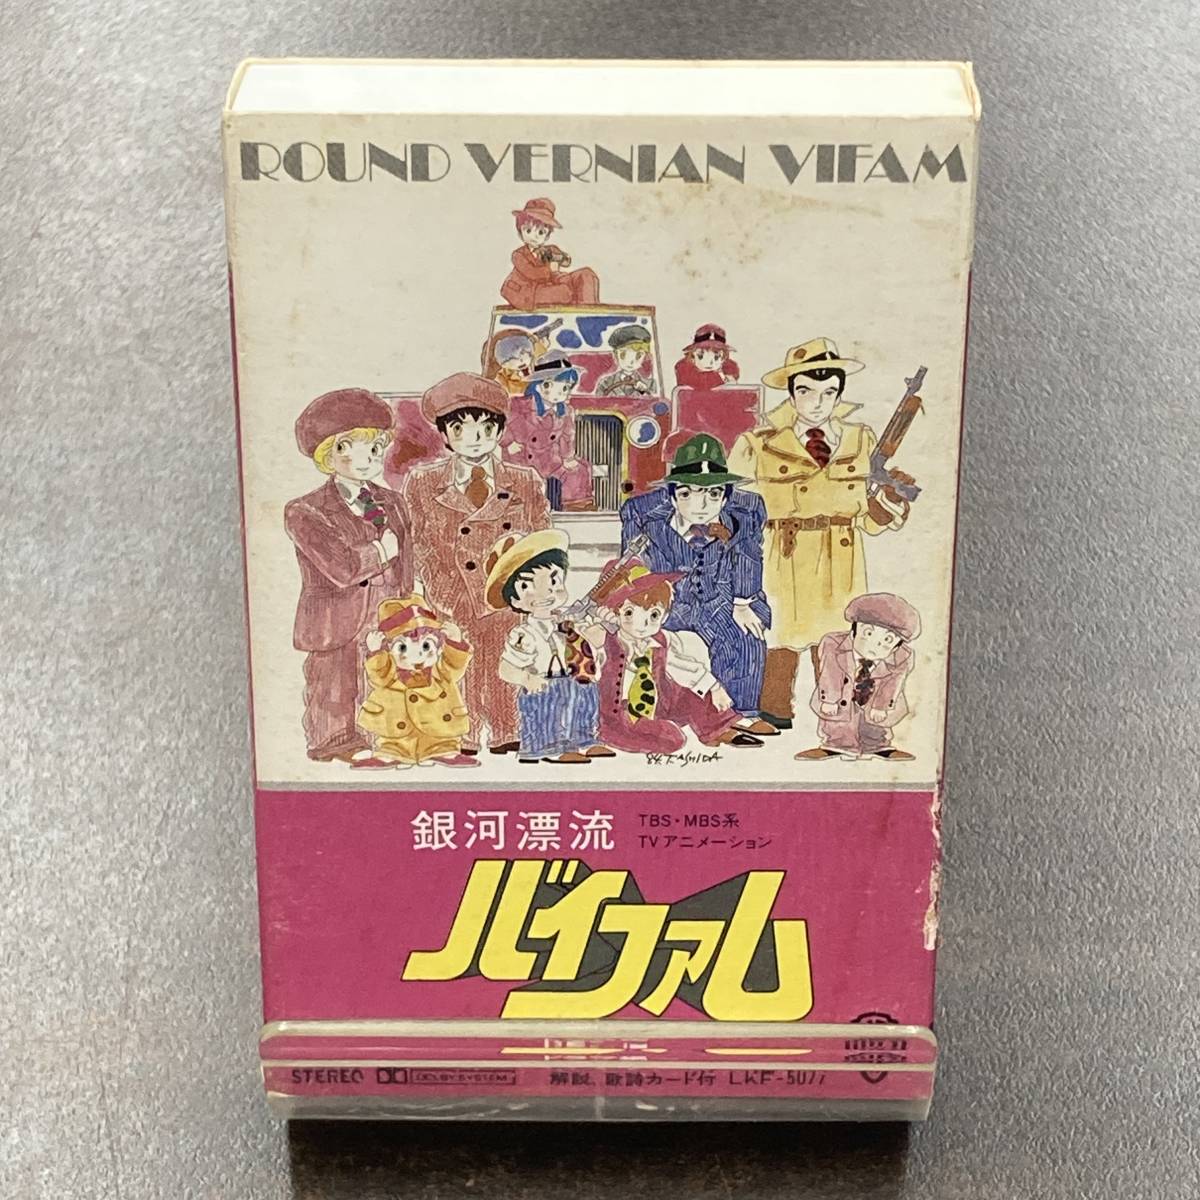 1367M 銀河漂流バイファム ドラマ編 カセットテープ / ROUND VERNIAN VIFAM Anime Cassette Tape_画像1